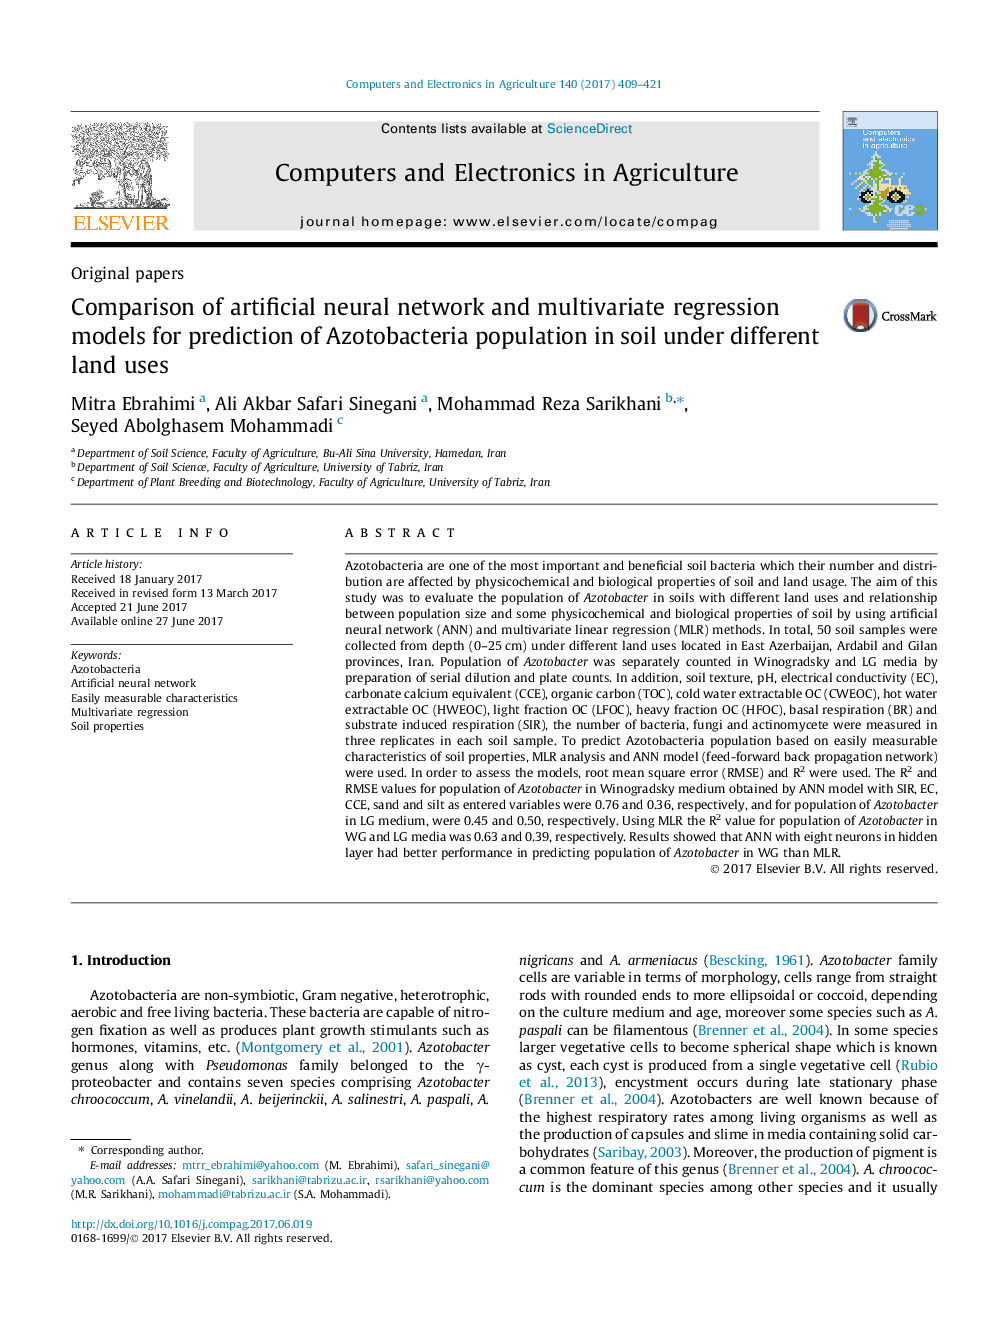 مقایسه شبکه عصبی مصنوعی و مدل های رگرسیون چند متغیره برای پیش بینی جمعیت آزوتوباکتری در خاک با استفاده از کاربری های مختلف